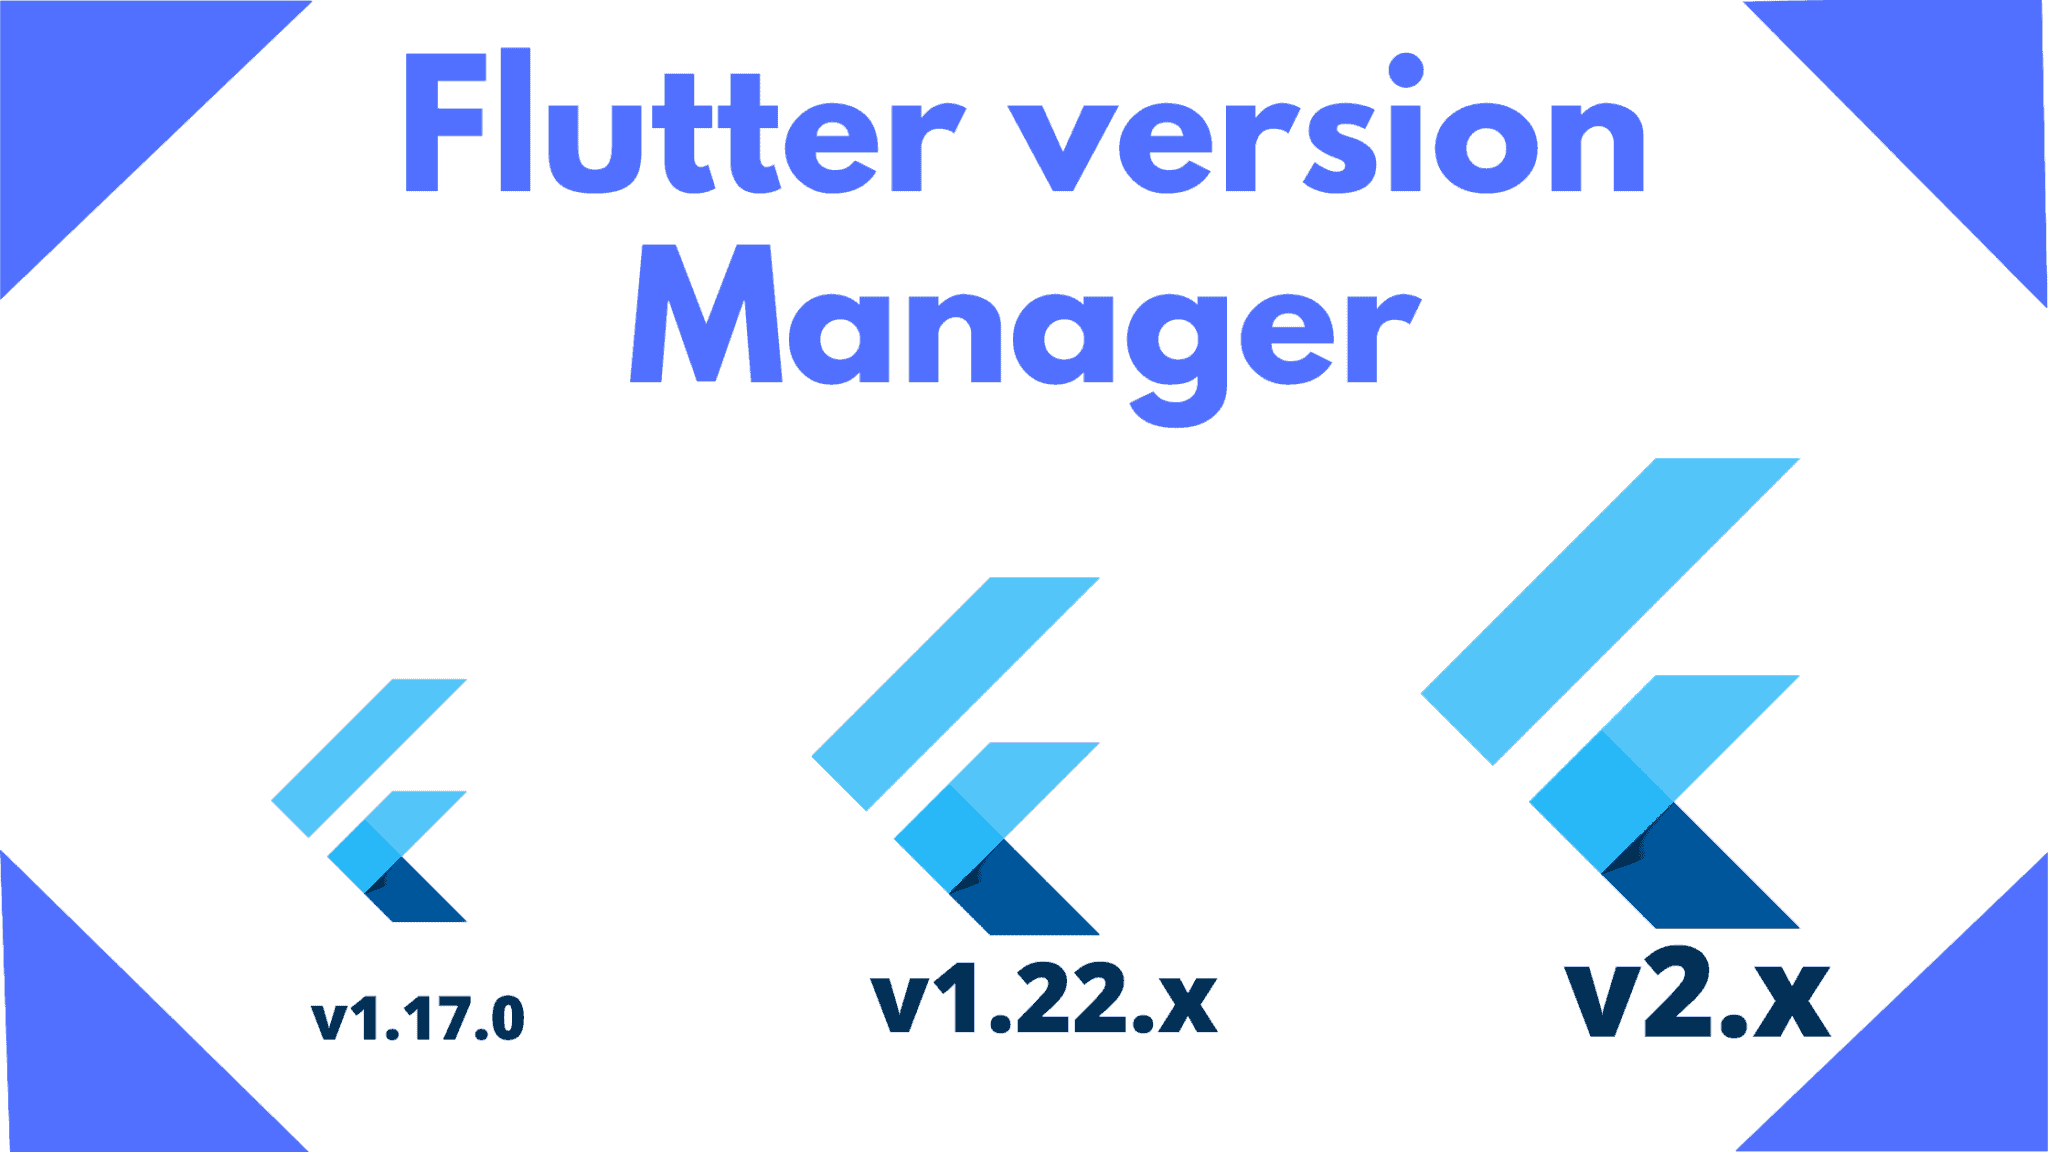 How to setup Flutter version manager vscode ubuntu?